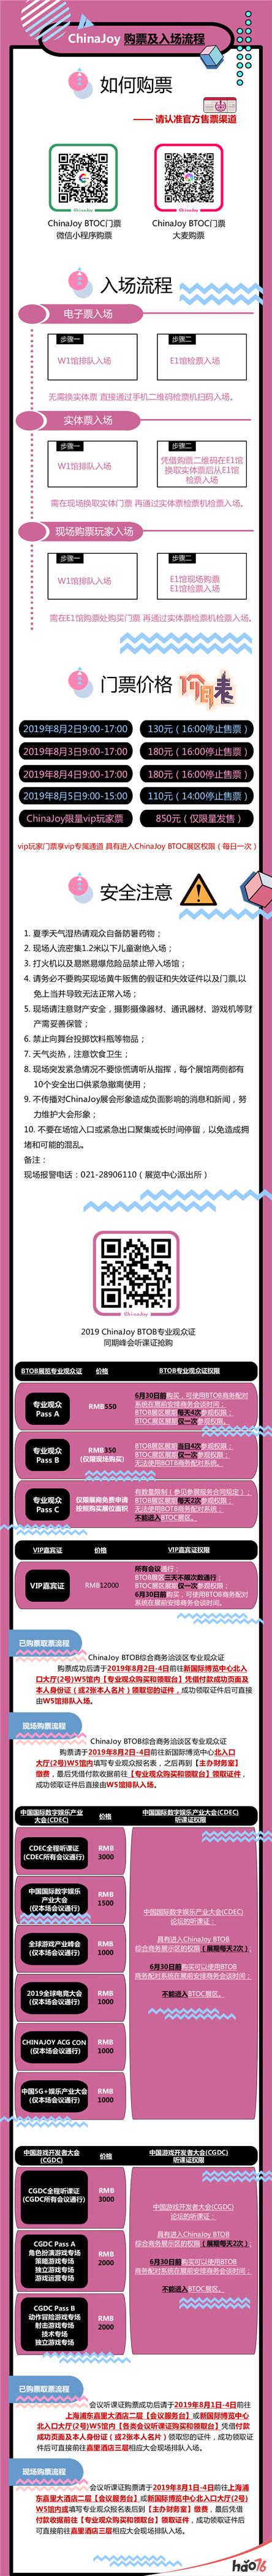 2019年第十七届ChinaJoy展前预览(综合信息篇)正式发布!